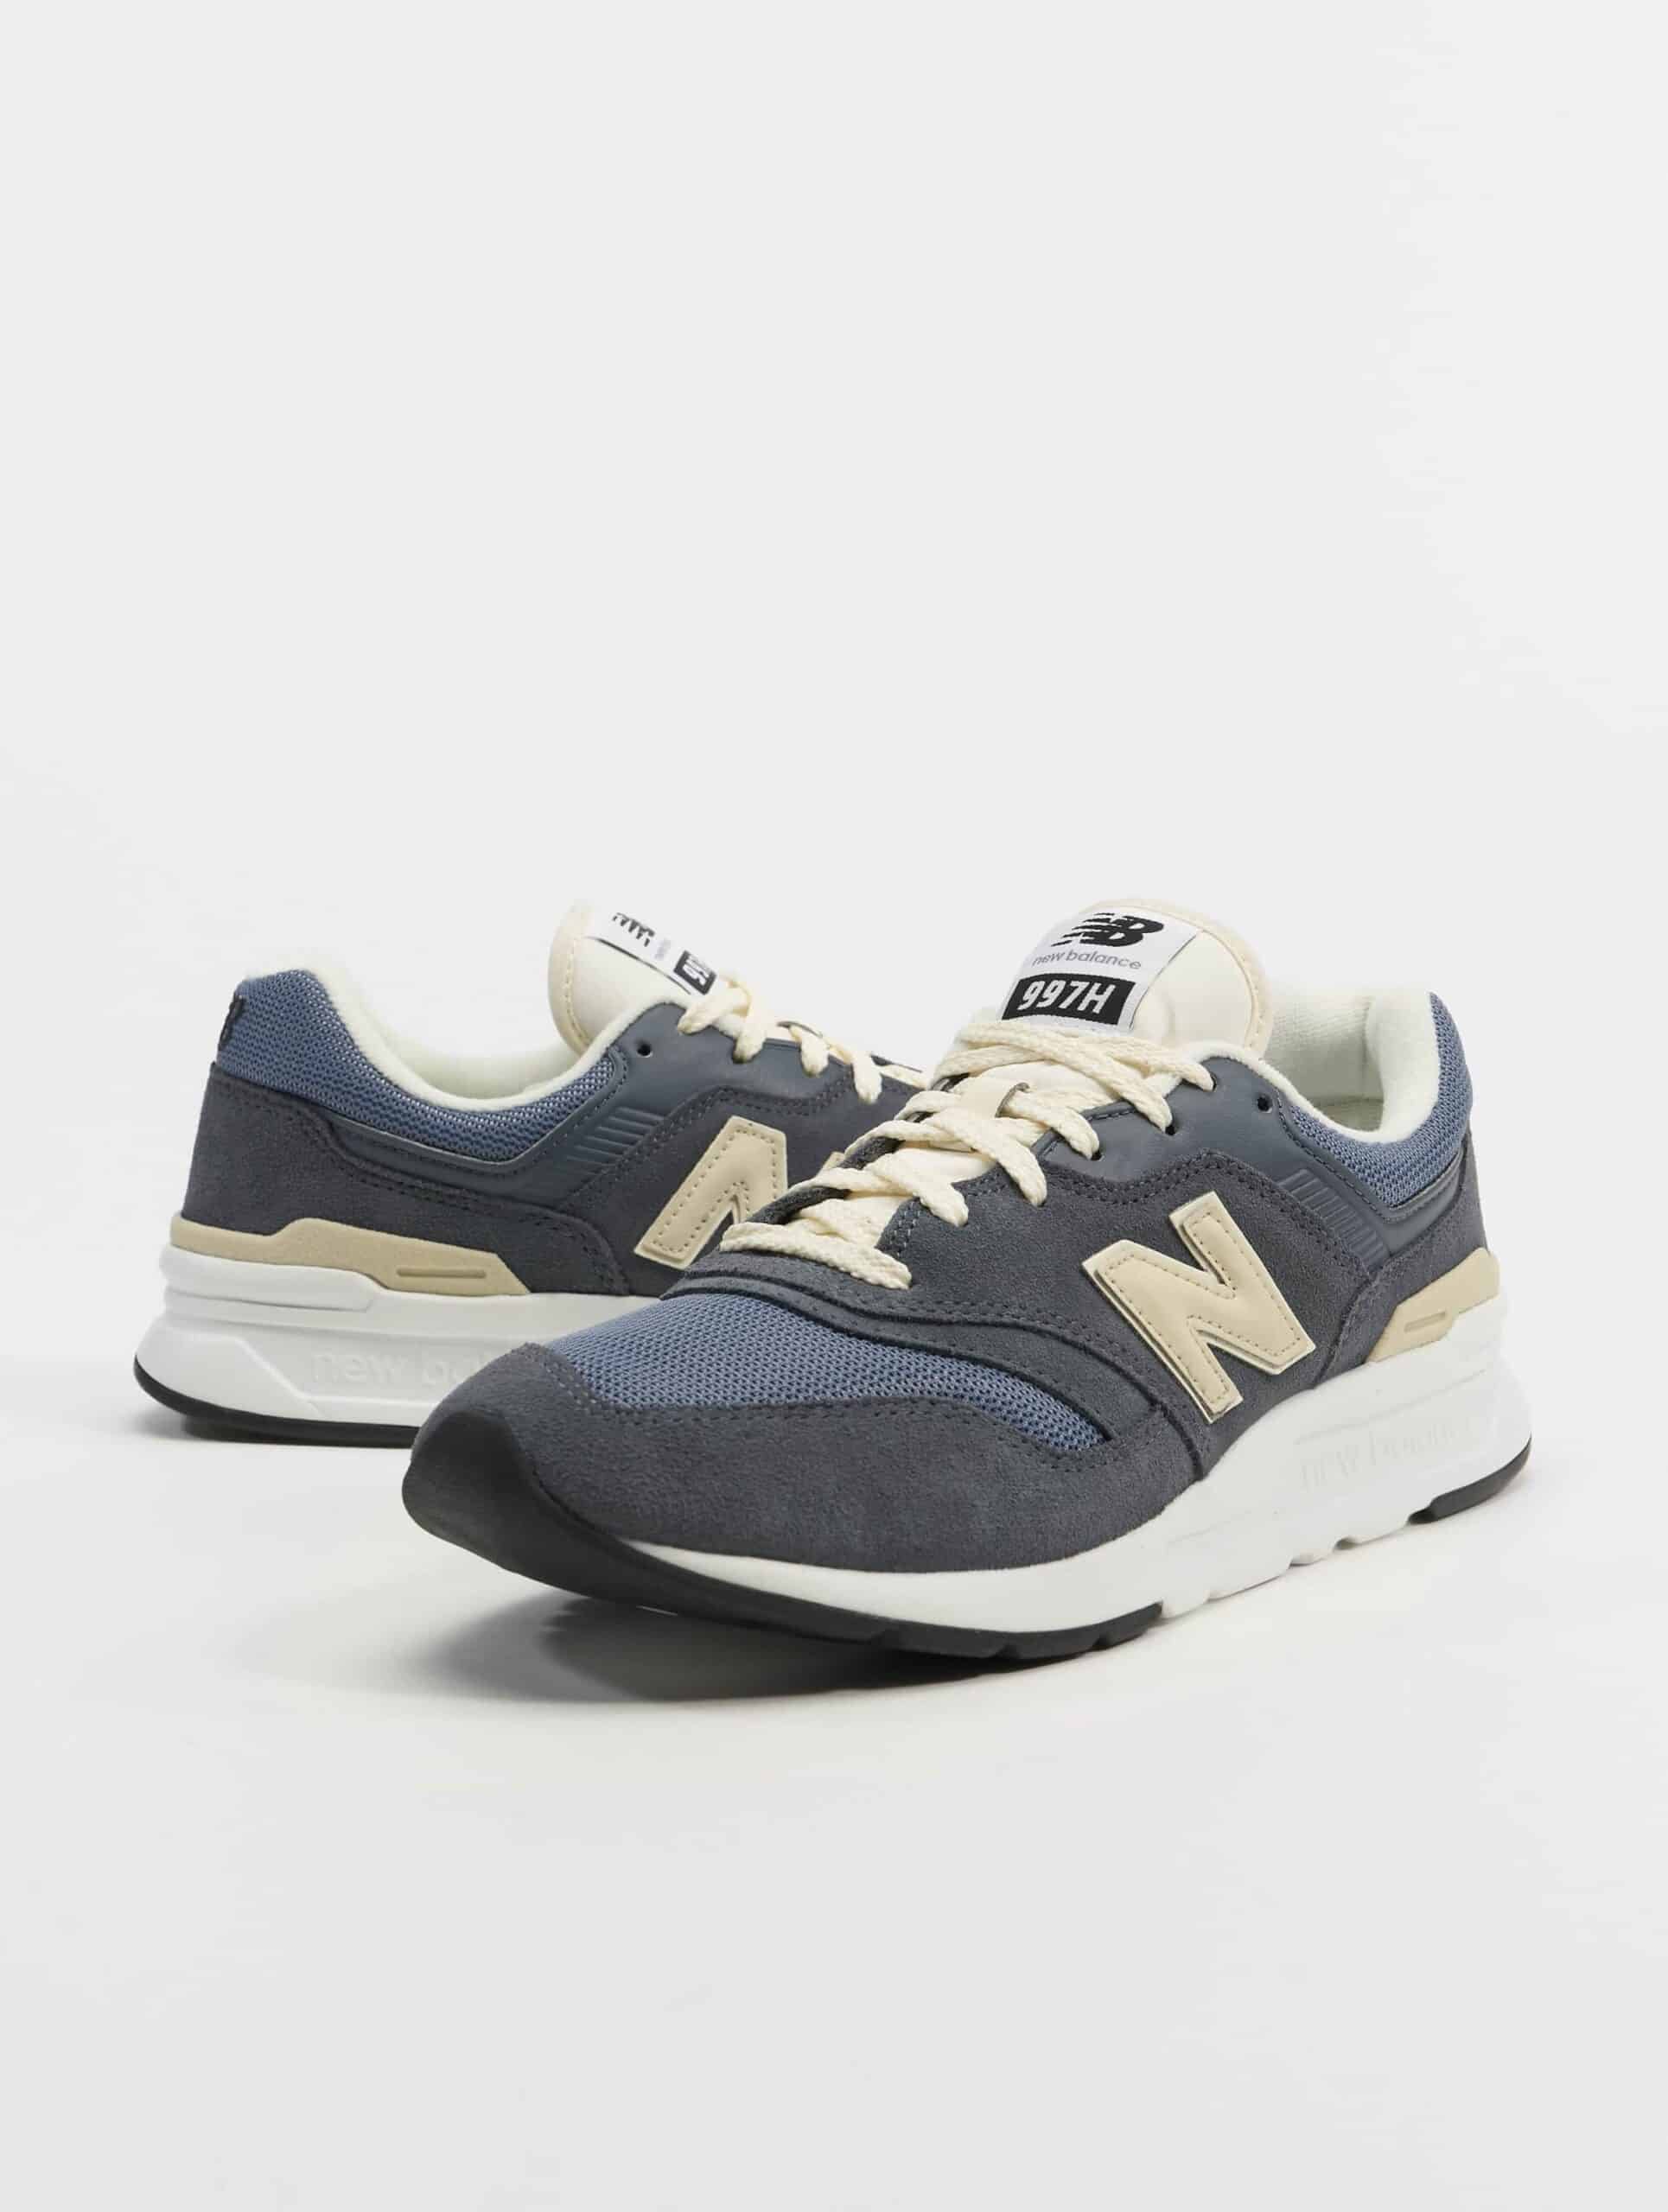 New Balance 997 Schuhe Männer,Unisex op kleur grijs, Maat 40